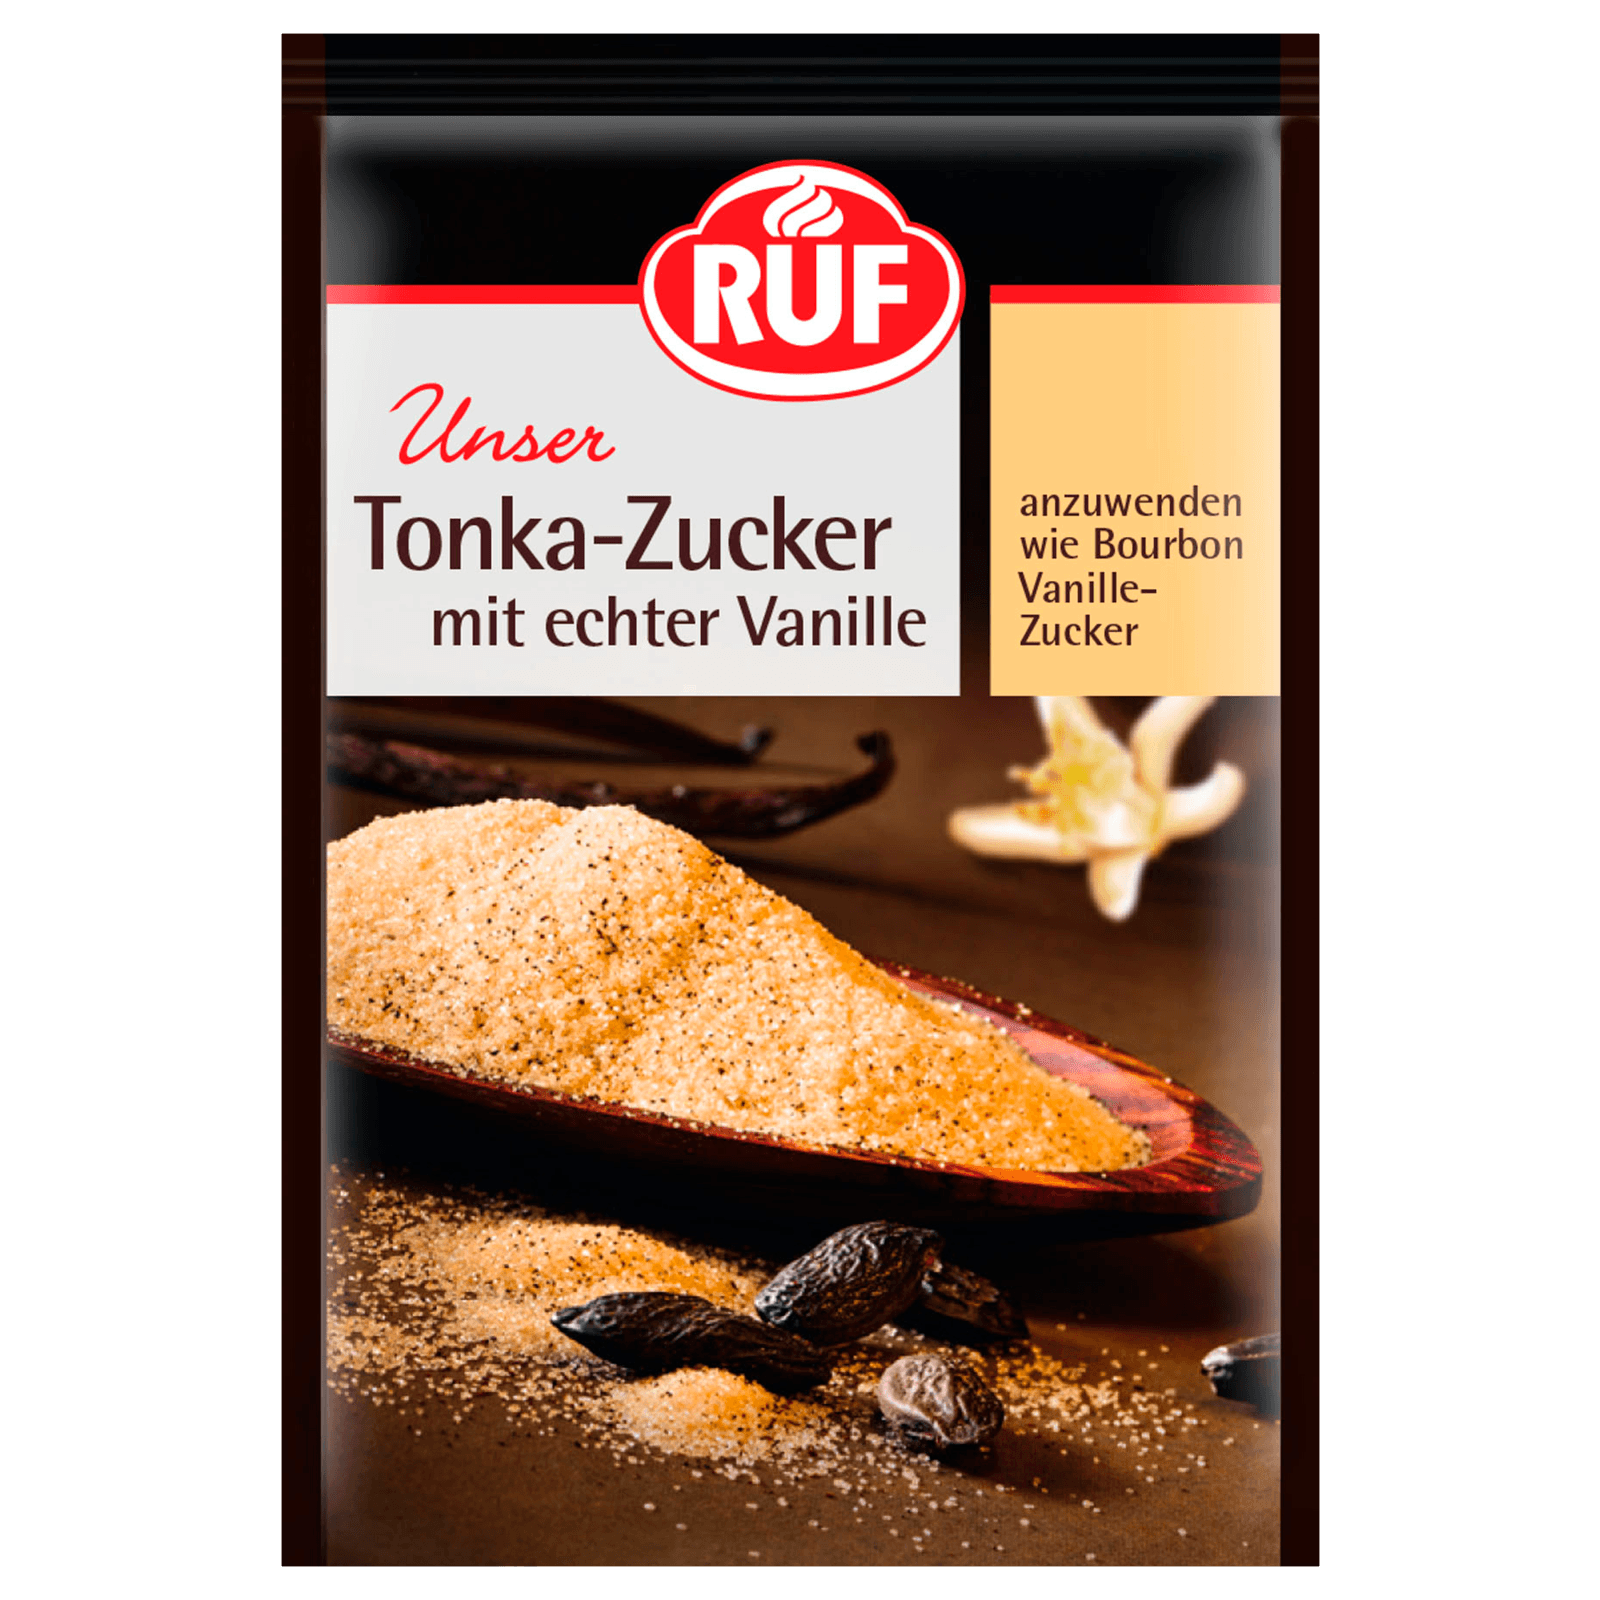 Ruf Tonka-Zucker mit echter Vanille 3x8g bei REWE online bestellen!